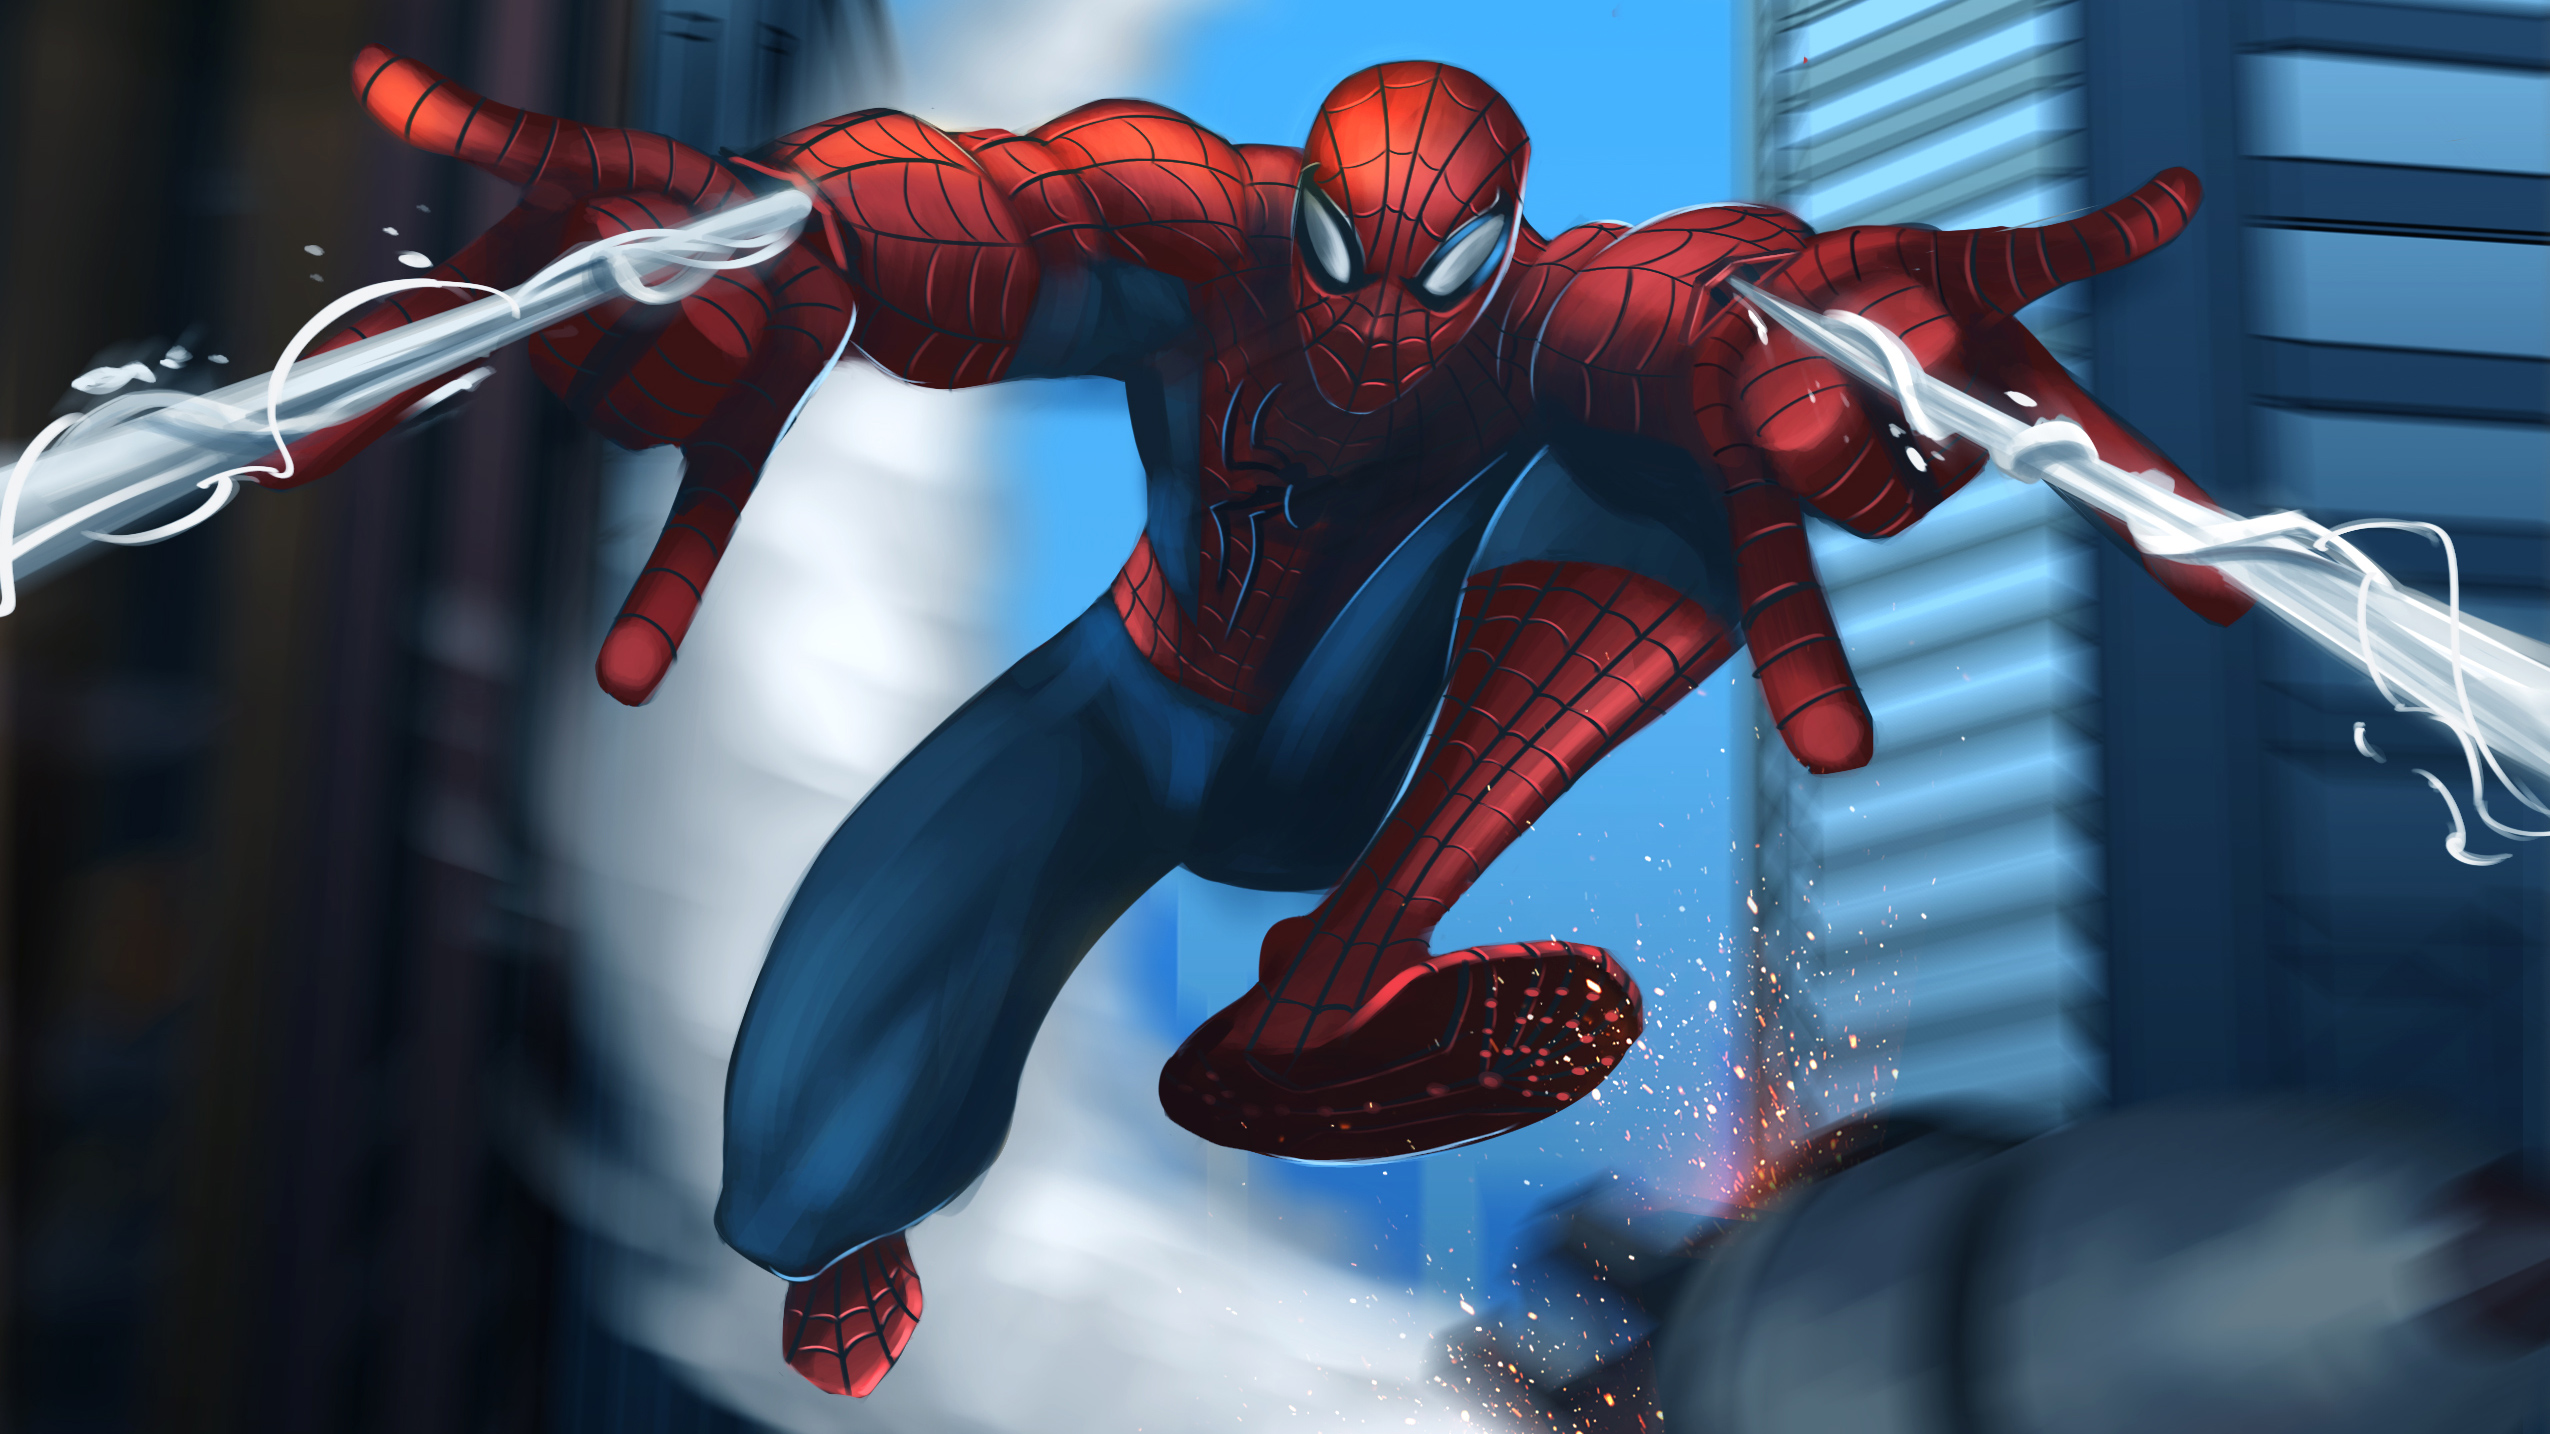  Spiderman  Web  Shooter HD Superheroes 4k Wallpapers 